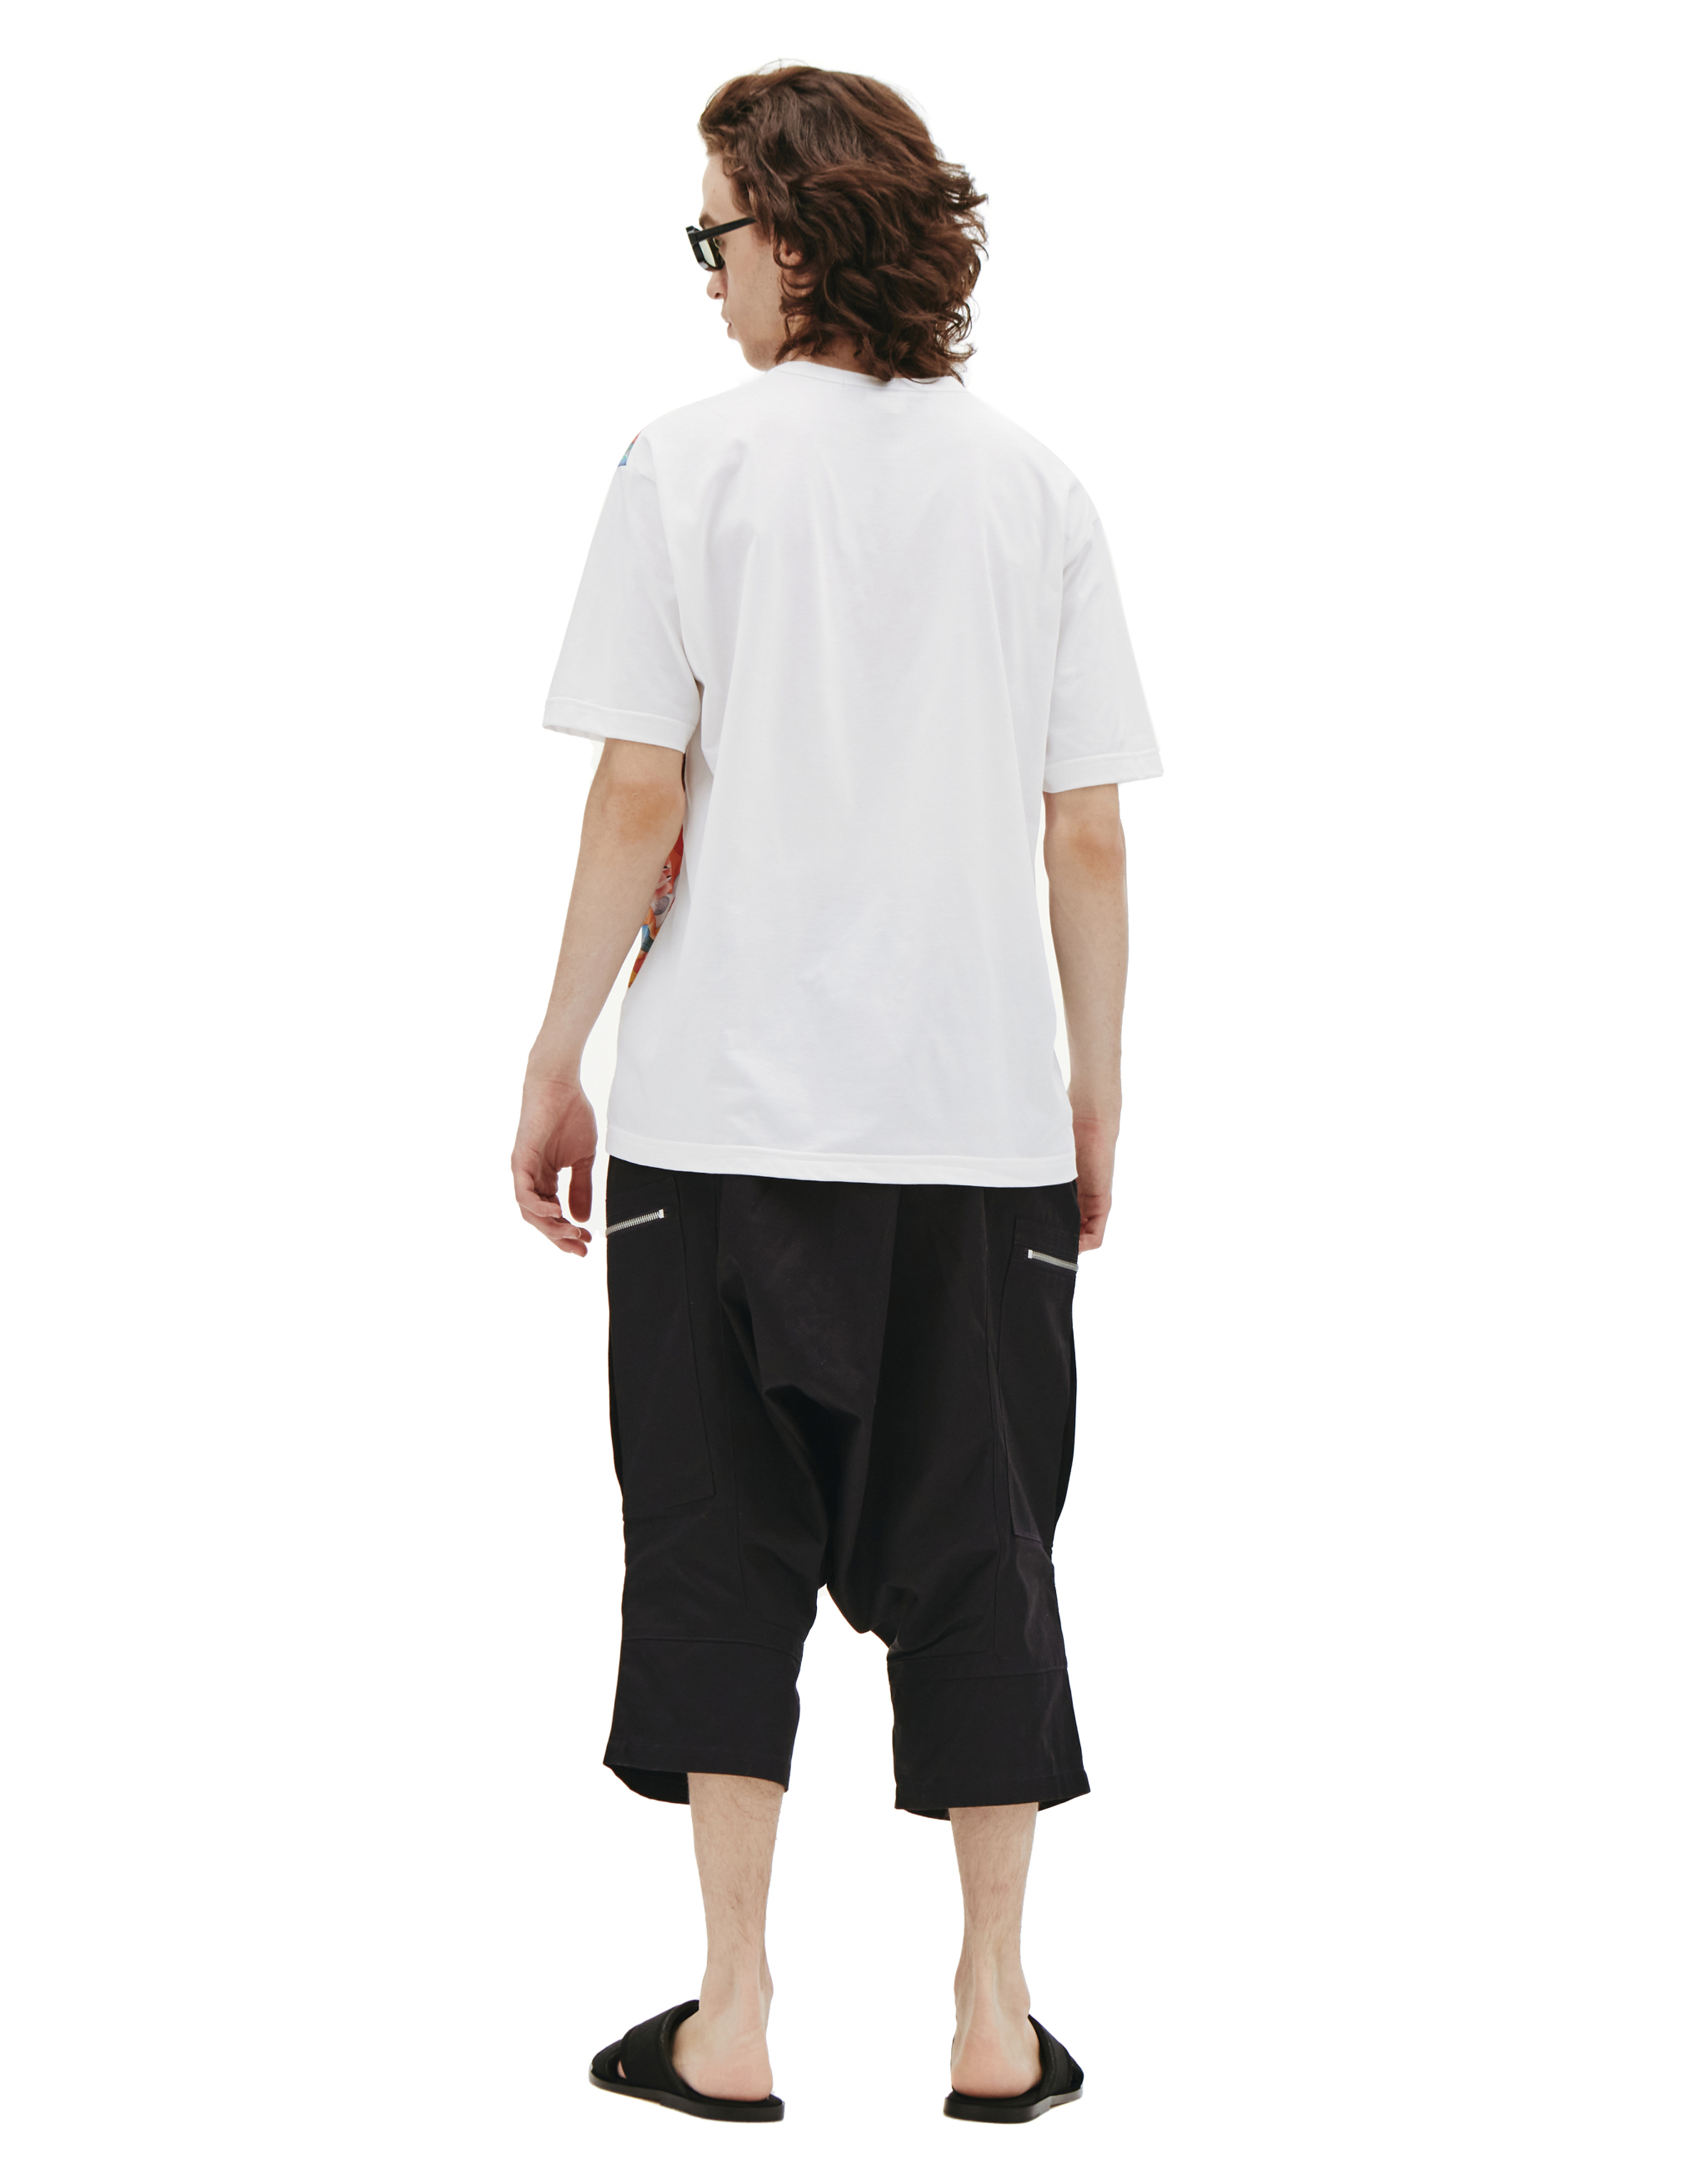 Хлопковая футболка с восточным принтом - Junya Watanabe WI-T004-051-1 Фото 3